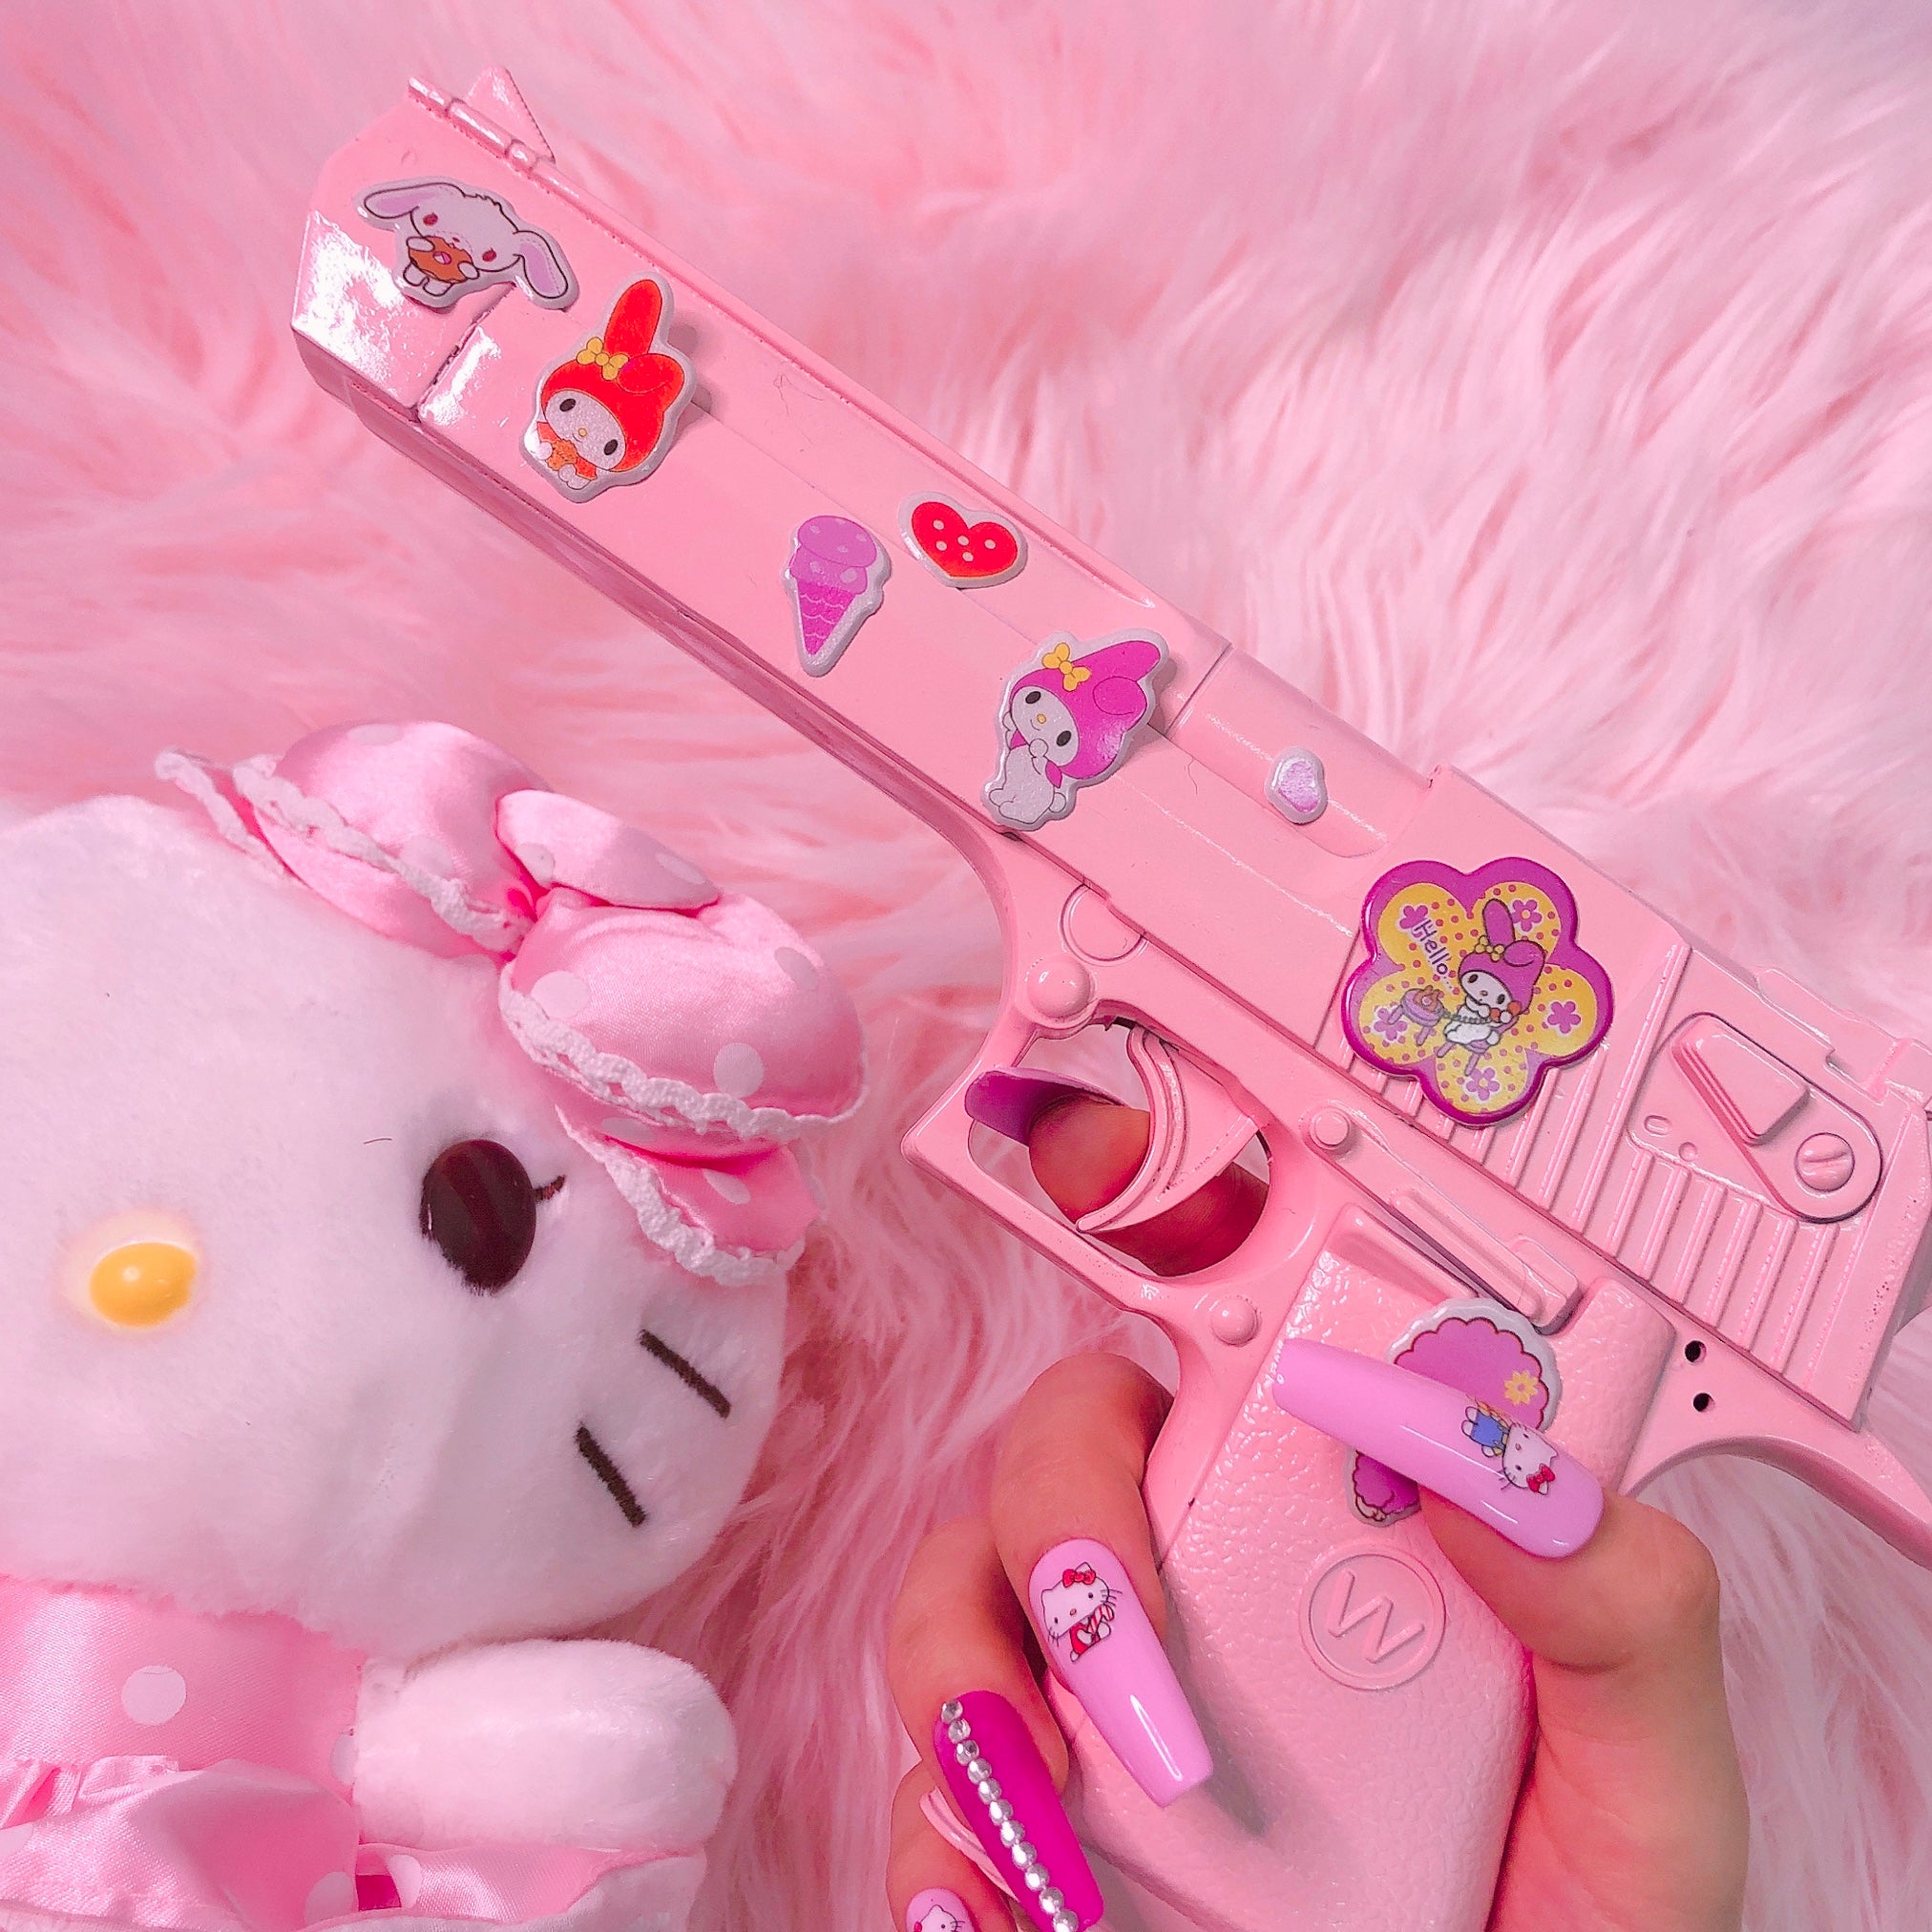 Baby Pink Toy Gun